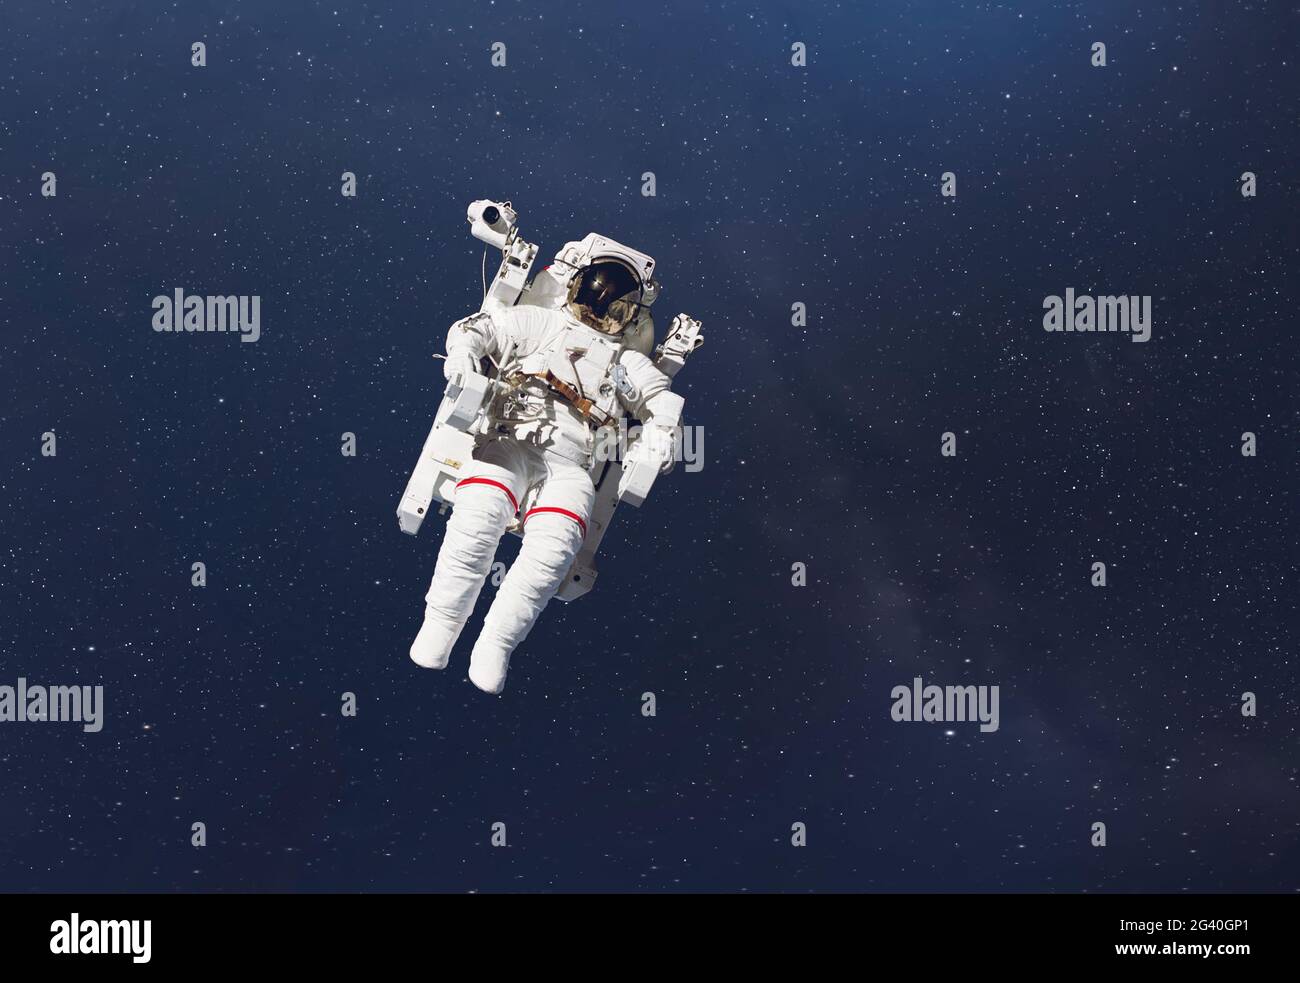 kosmonauten fliegen im Weltraum mit Sternen und Galaxienhintergrund mit einem Lichtstrahl. Elemente dieses Bildes wurden von der nasa eingerichtet Stockfoto